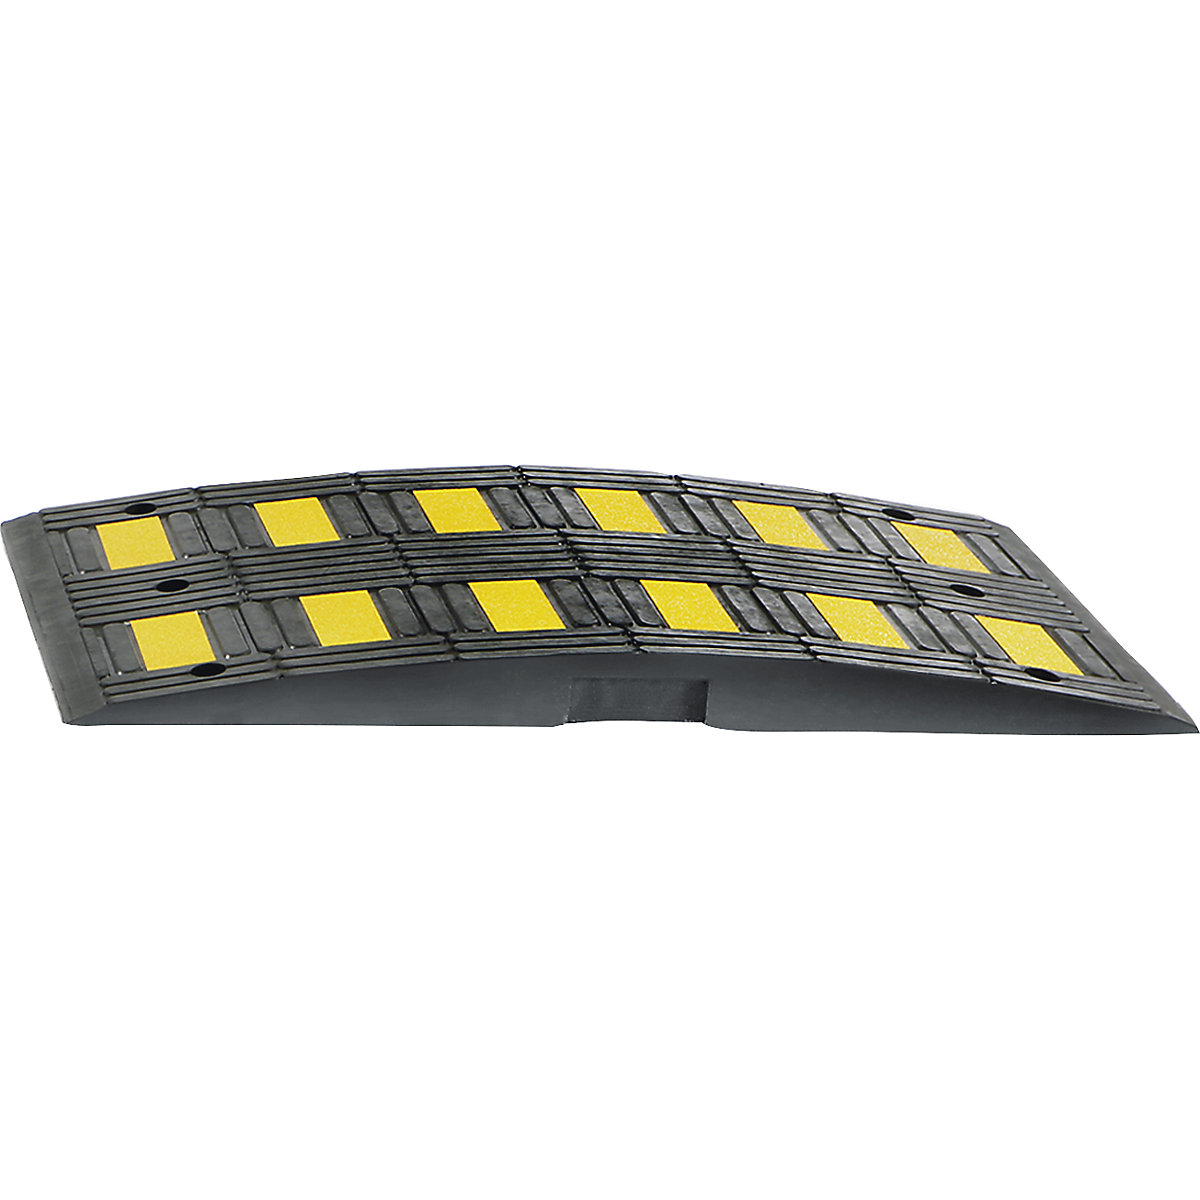 Fahrbahnschwelle aus Recyling-Gummi, gelb / schwarz, für Richtgeschwindigkeit max. 20 km/h-4